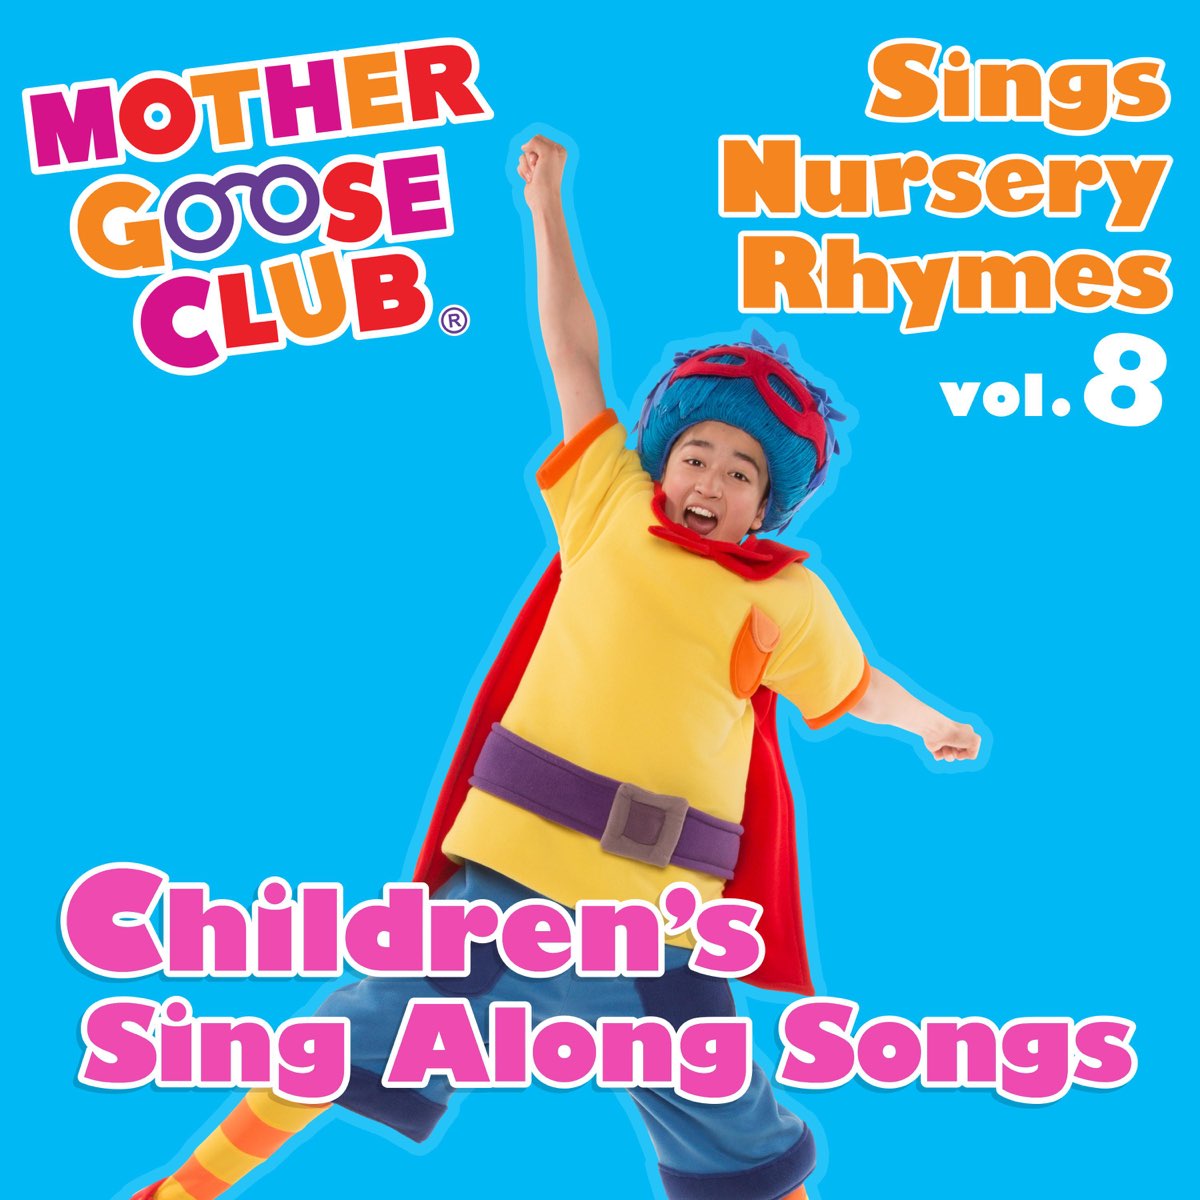 Mother Goose Club Sings Nursery Rhymes, Vol. 8: Children's Sing Along Songs  của Mother Goose Club trên Apple Music